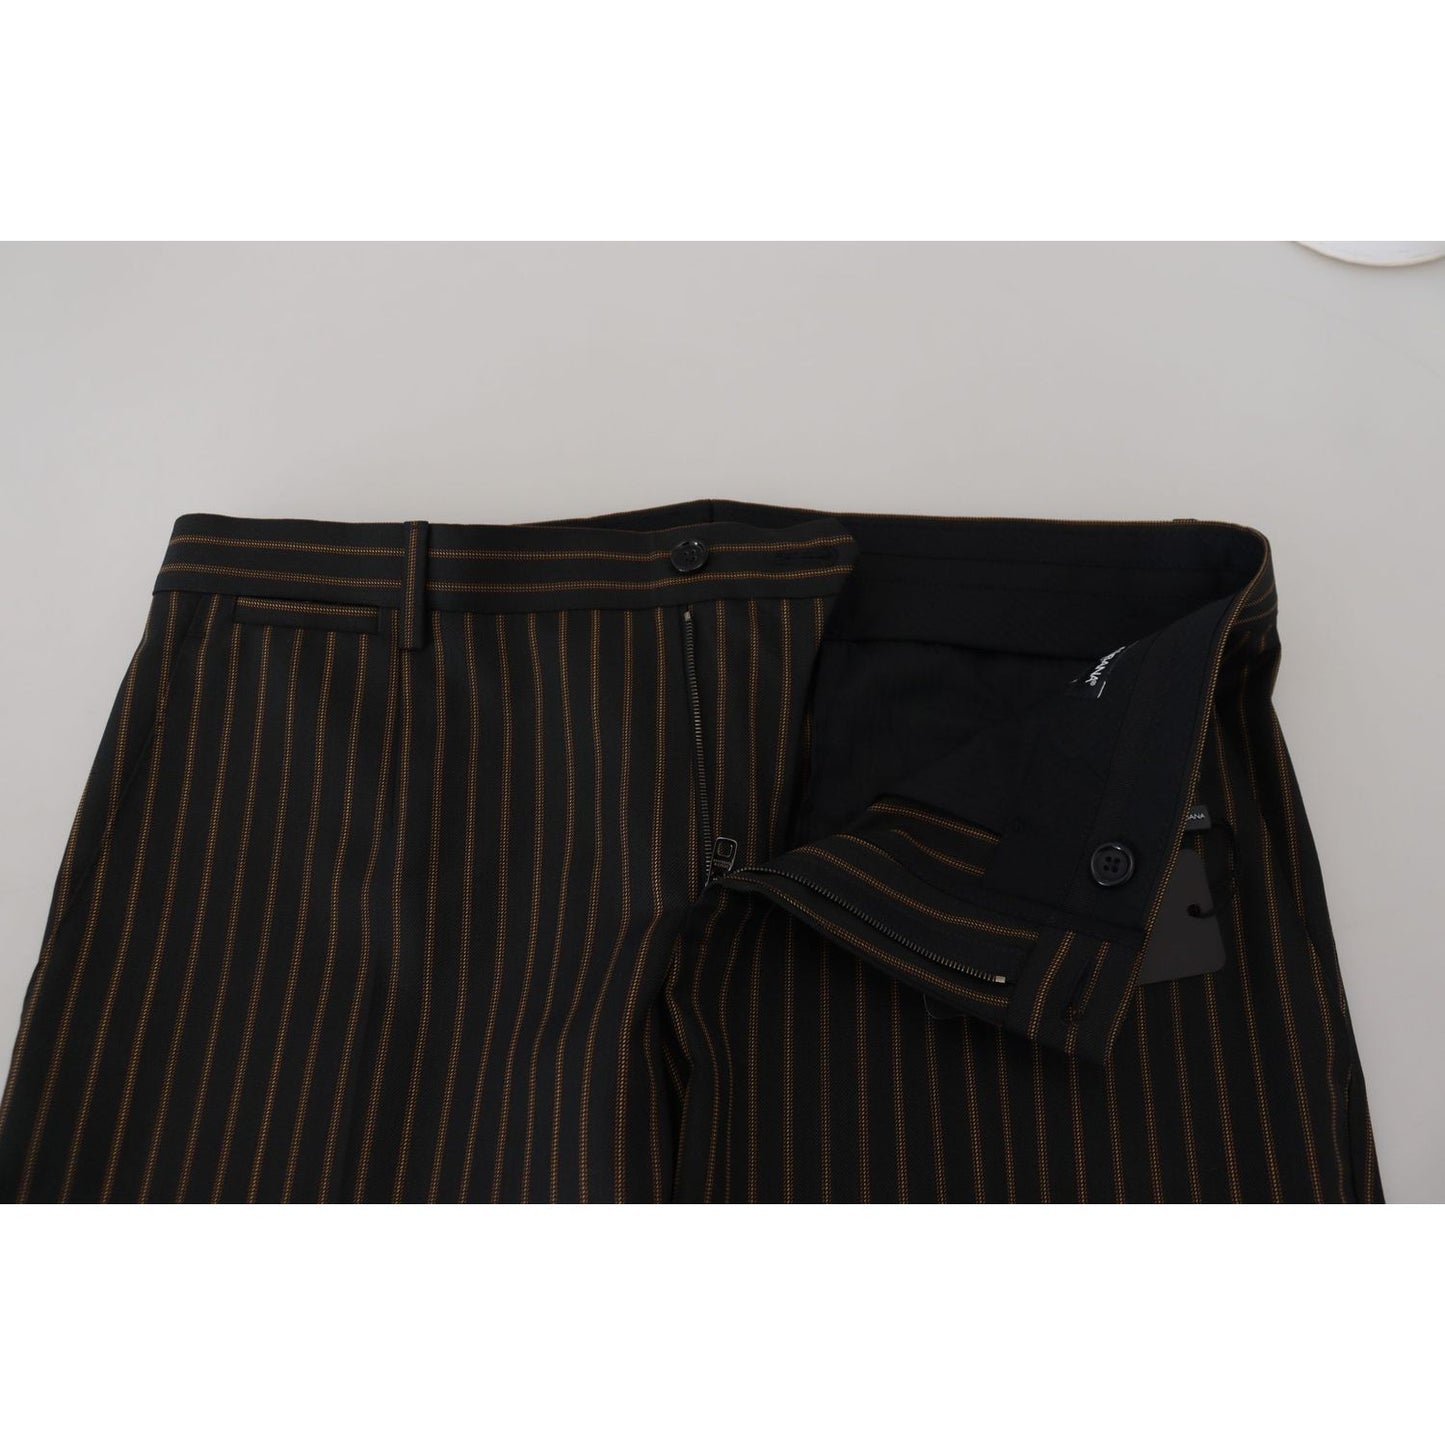 Dolce & Gabbana Elegant Striped Cotton Blend Pants black-brown-striped-men-formal-pants